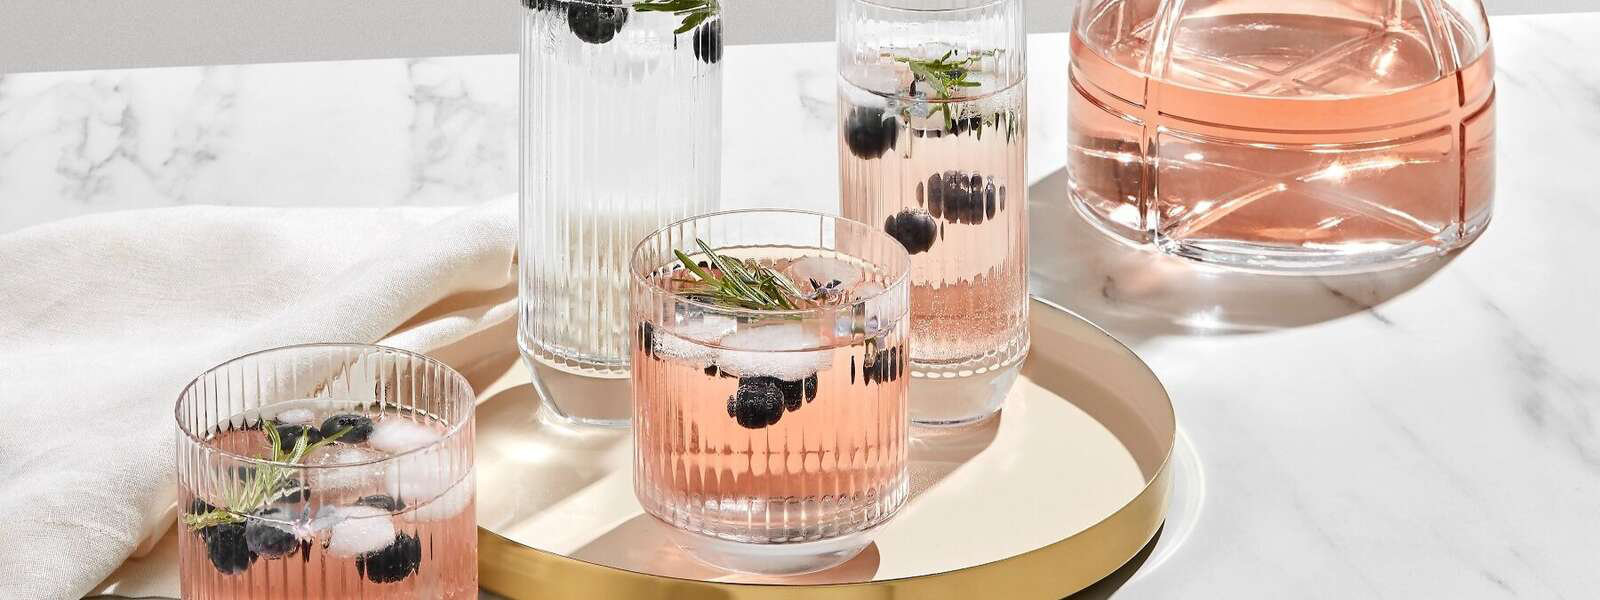 10 oz. ARC Connoisseur Martini Glasses - Brilliant Promos - Be Brilliant!